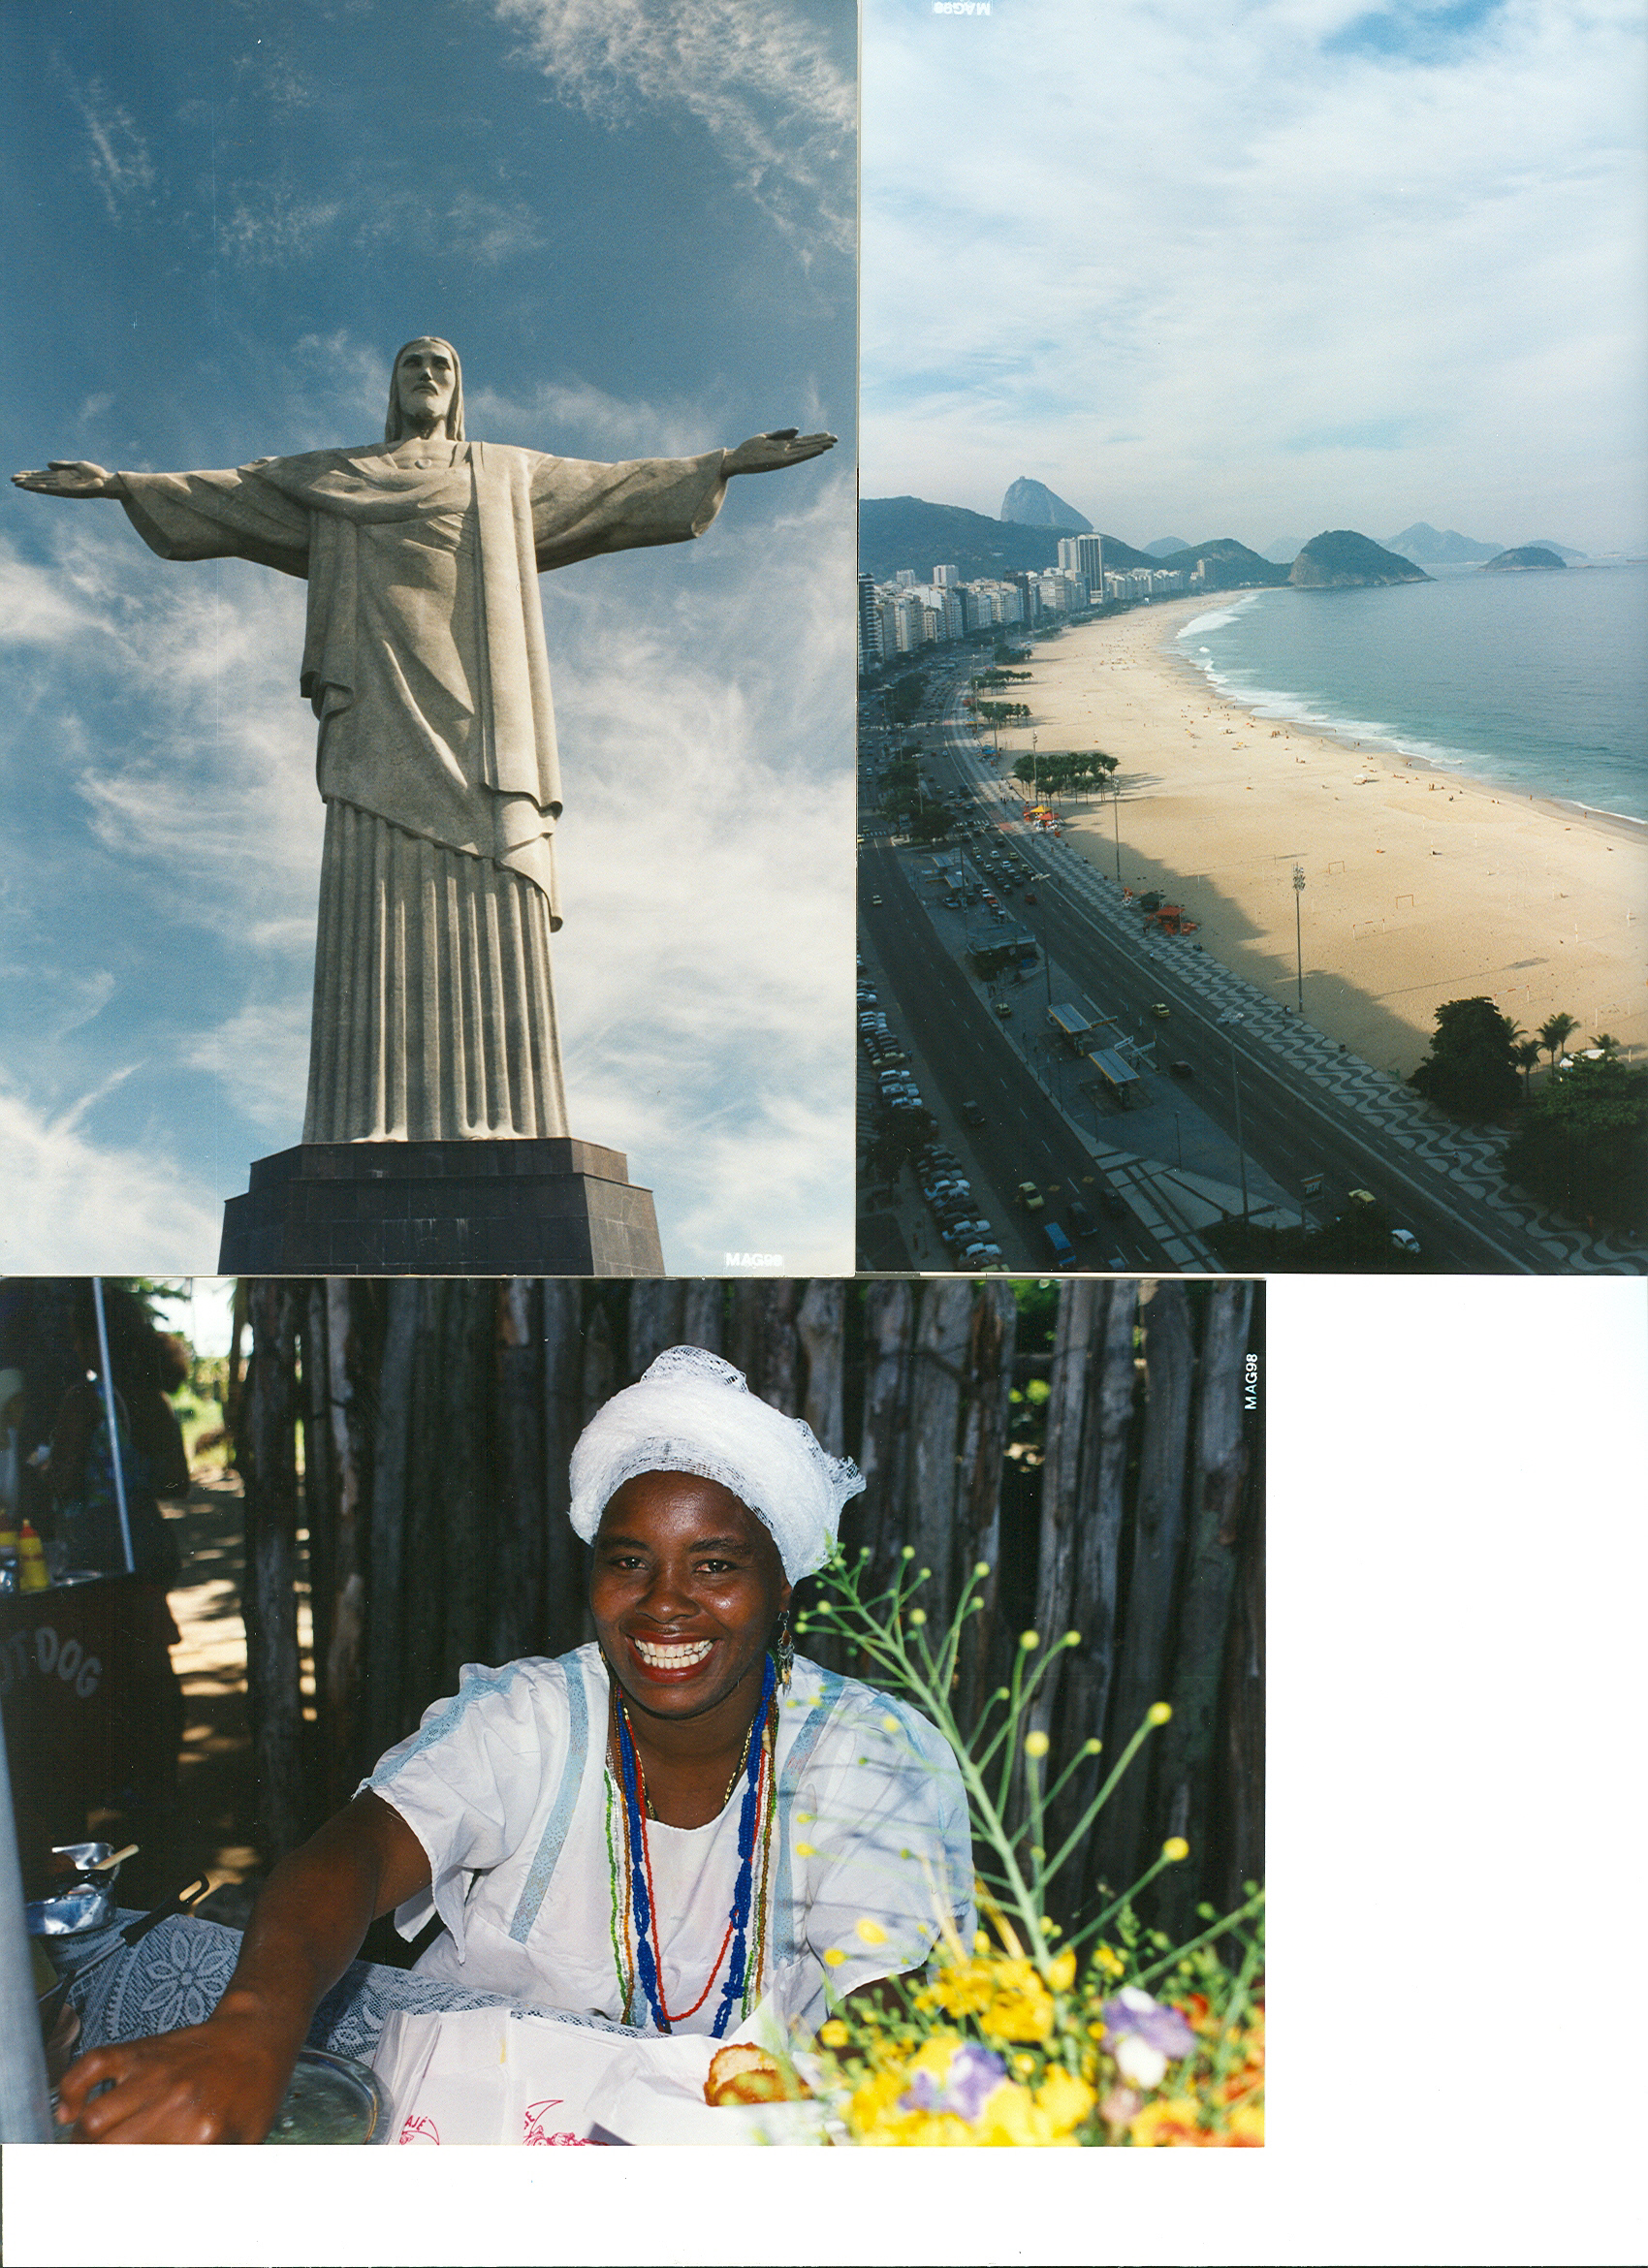 Brasile, Mondiali 2014: formate 15mila persone per il programma “Ricevere bene i mondiali”